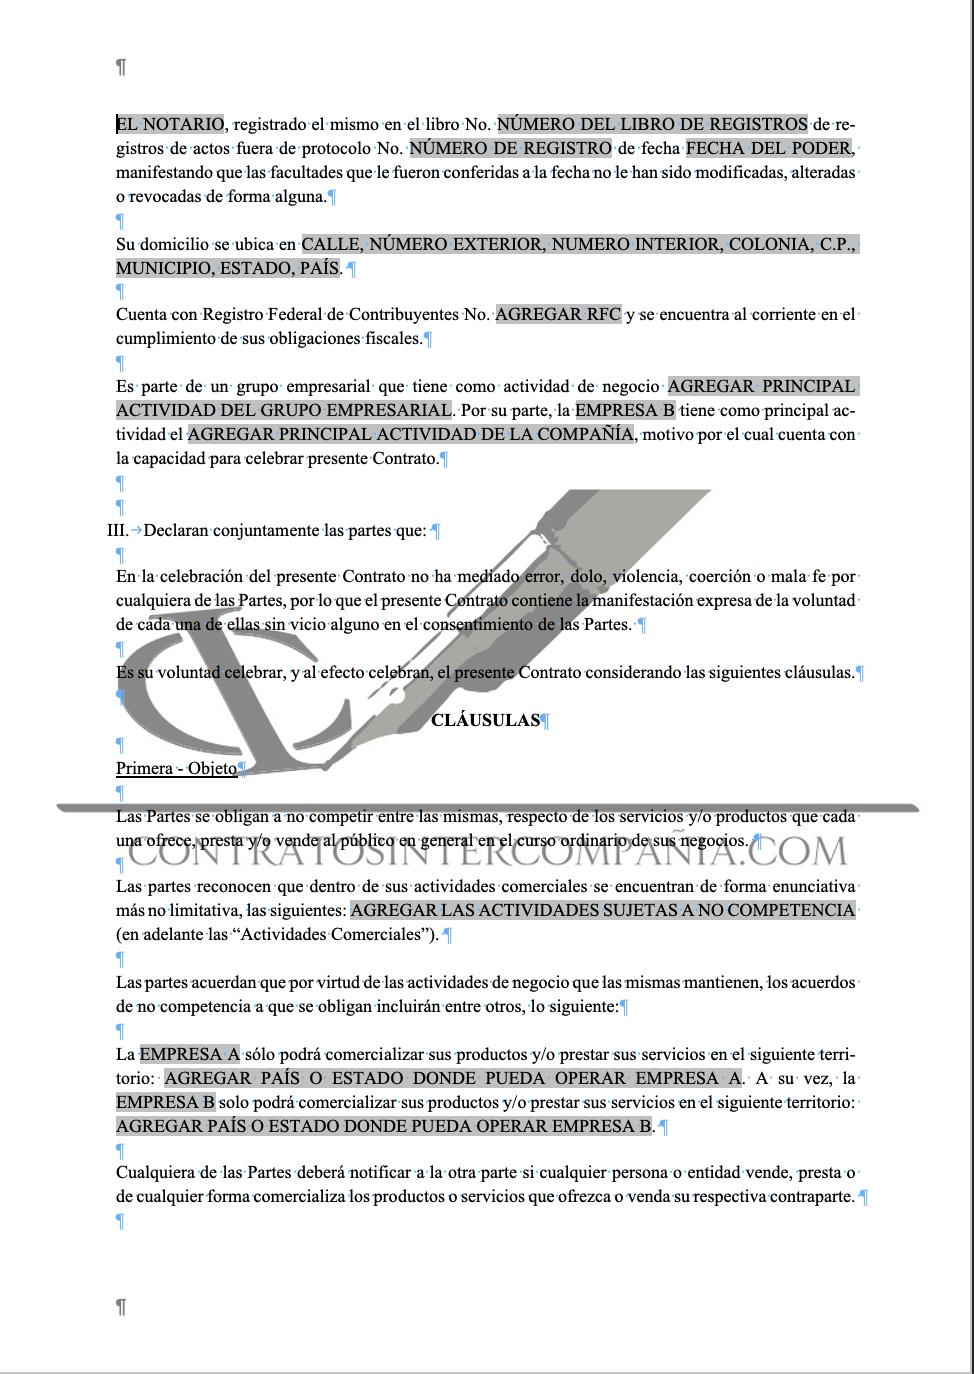 Contrato de no competencia - Contratos Intercompañía